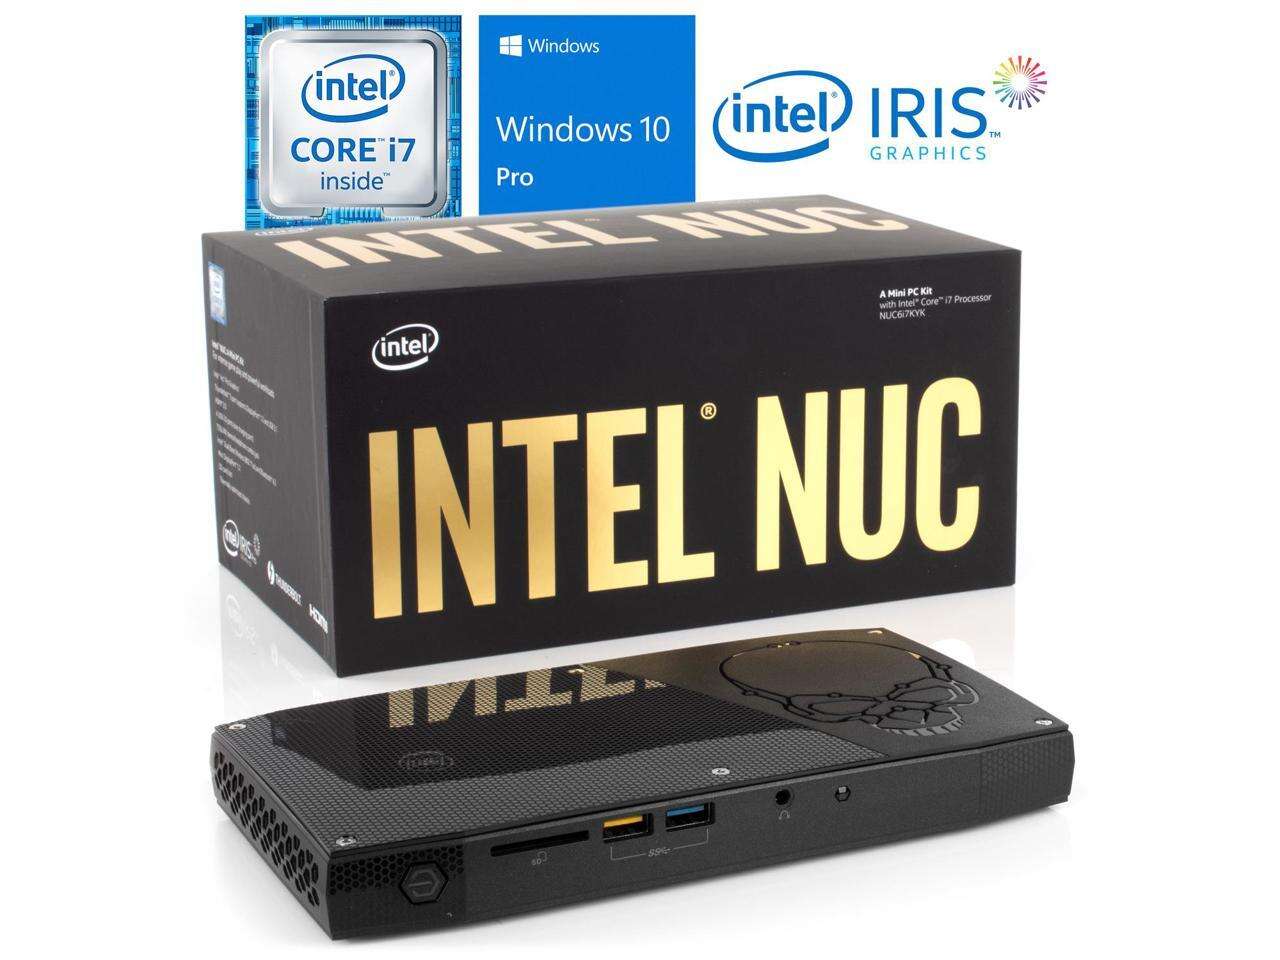 Intel NUC6i7KYK Mini PC, Intel Core i7-6770HQ Upto 3.5GHz, 8GB RAM, 512GB NVMe SSD, HDMI, Thunderbolt , Mini DisplayPort, Card Reader, Wi-Fi, Bluetooth, Windows 10 Pro